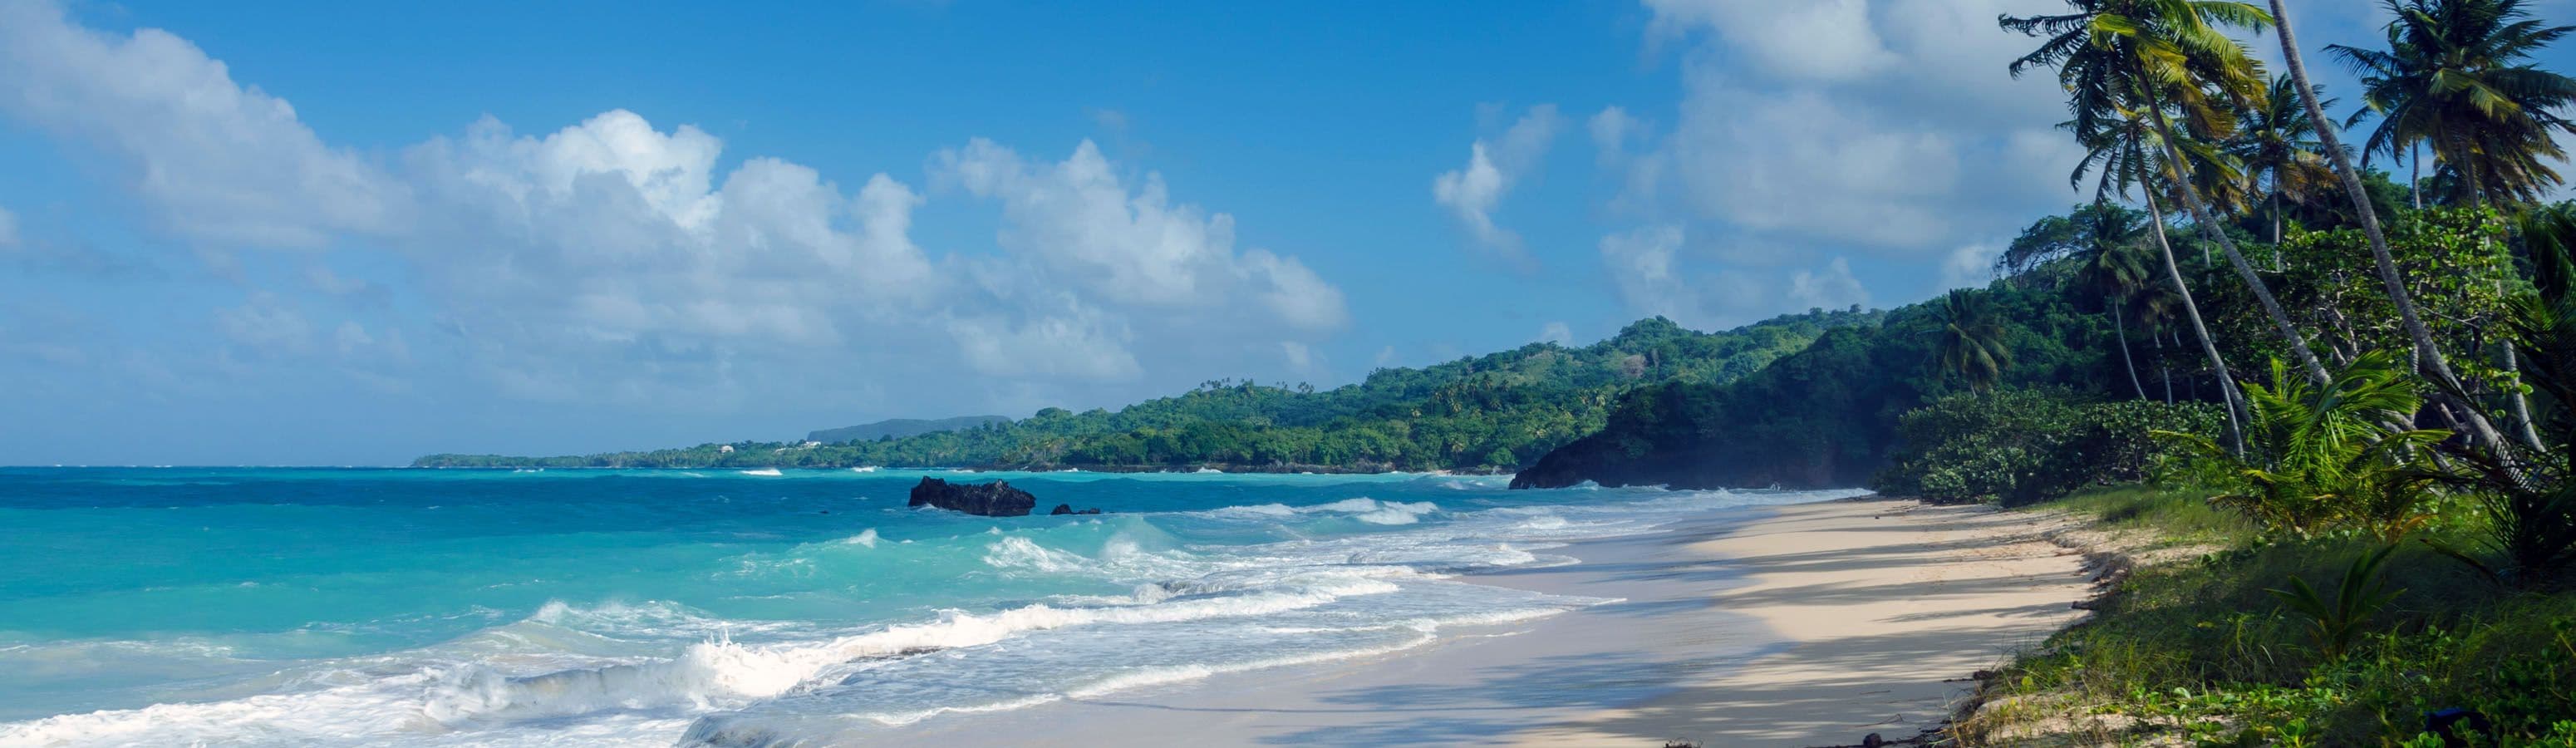 Rilassati su una delle spiagge più belle dell'isola di Samaná